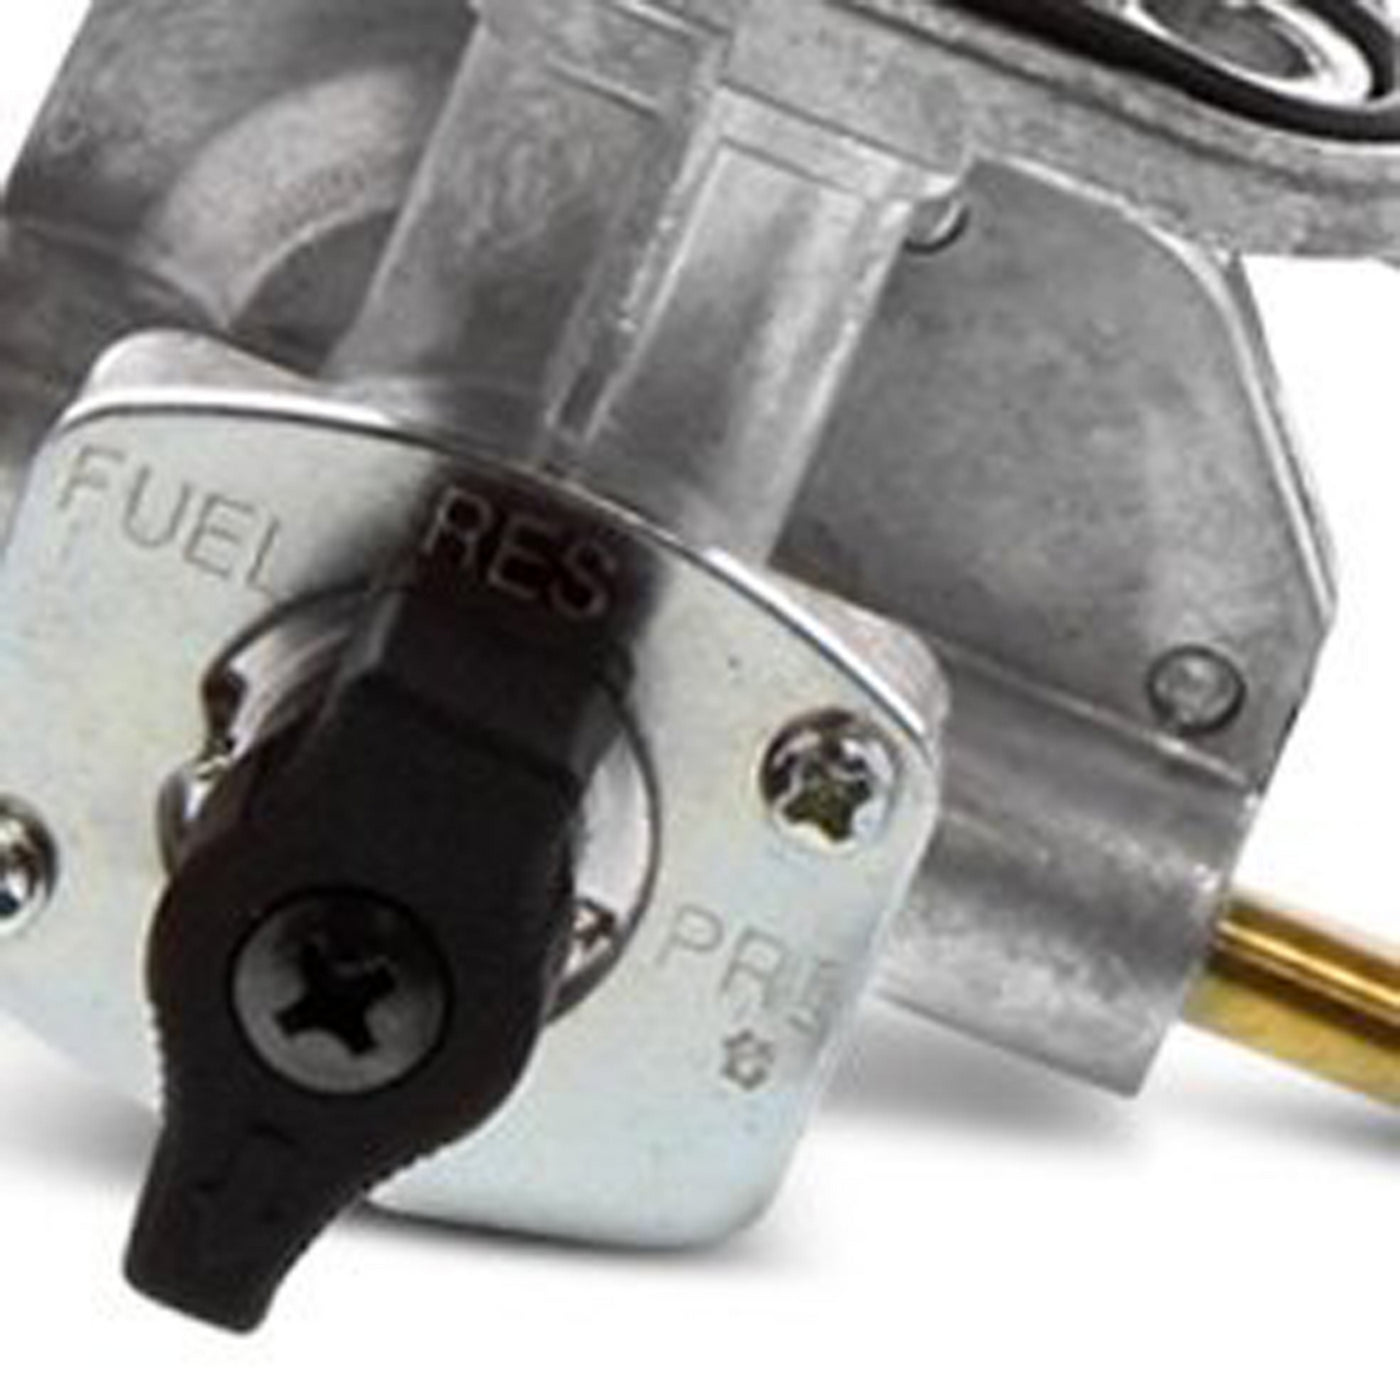 Fuel Star FS101-0125 Fuel Valve Kit #FS101-0125